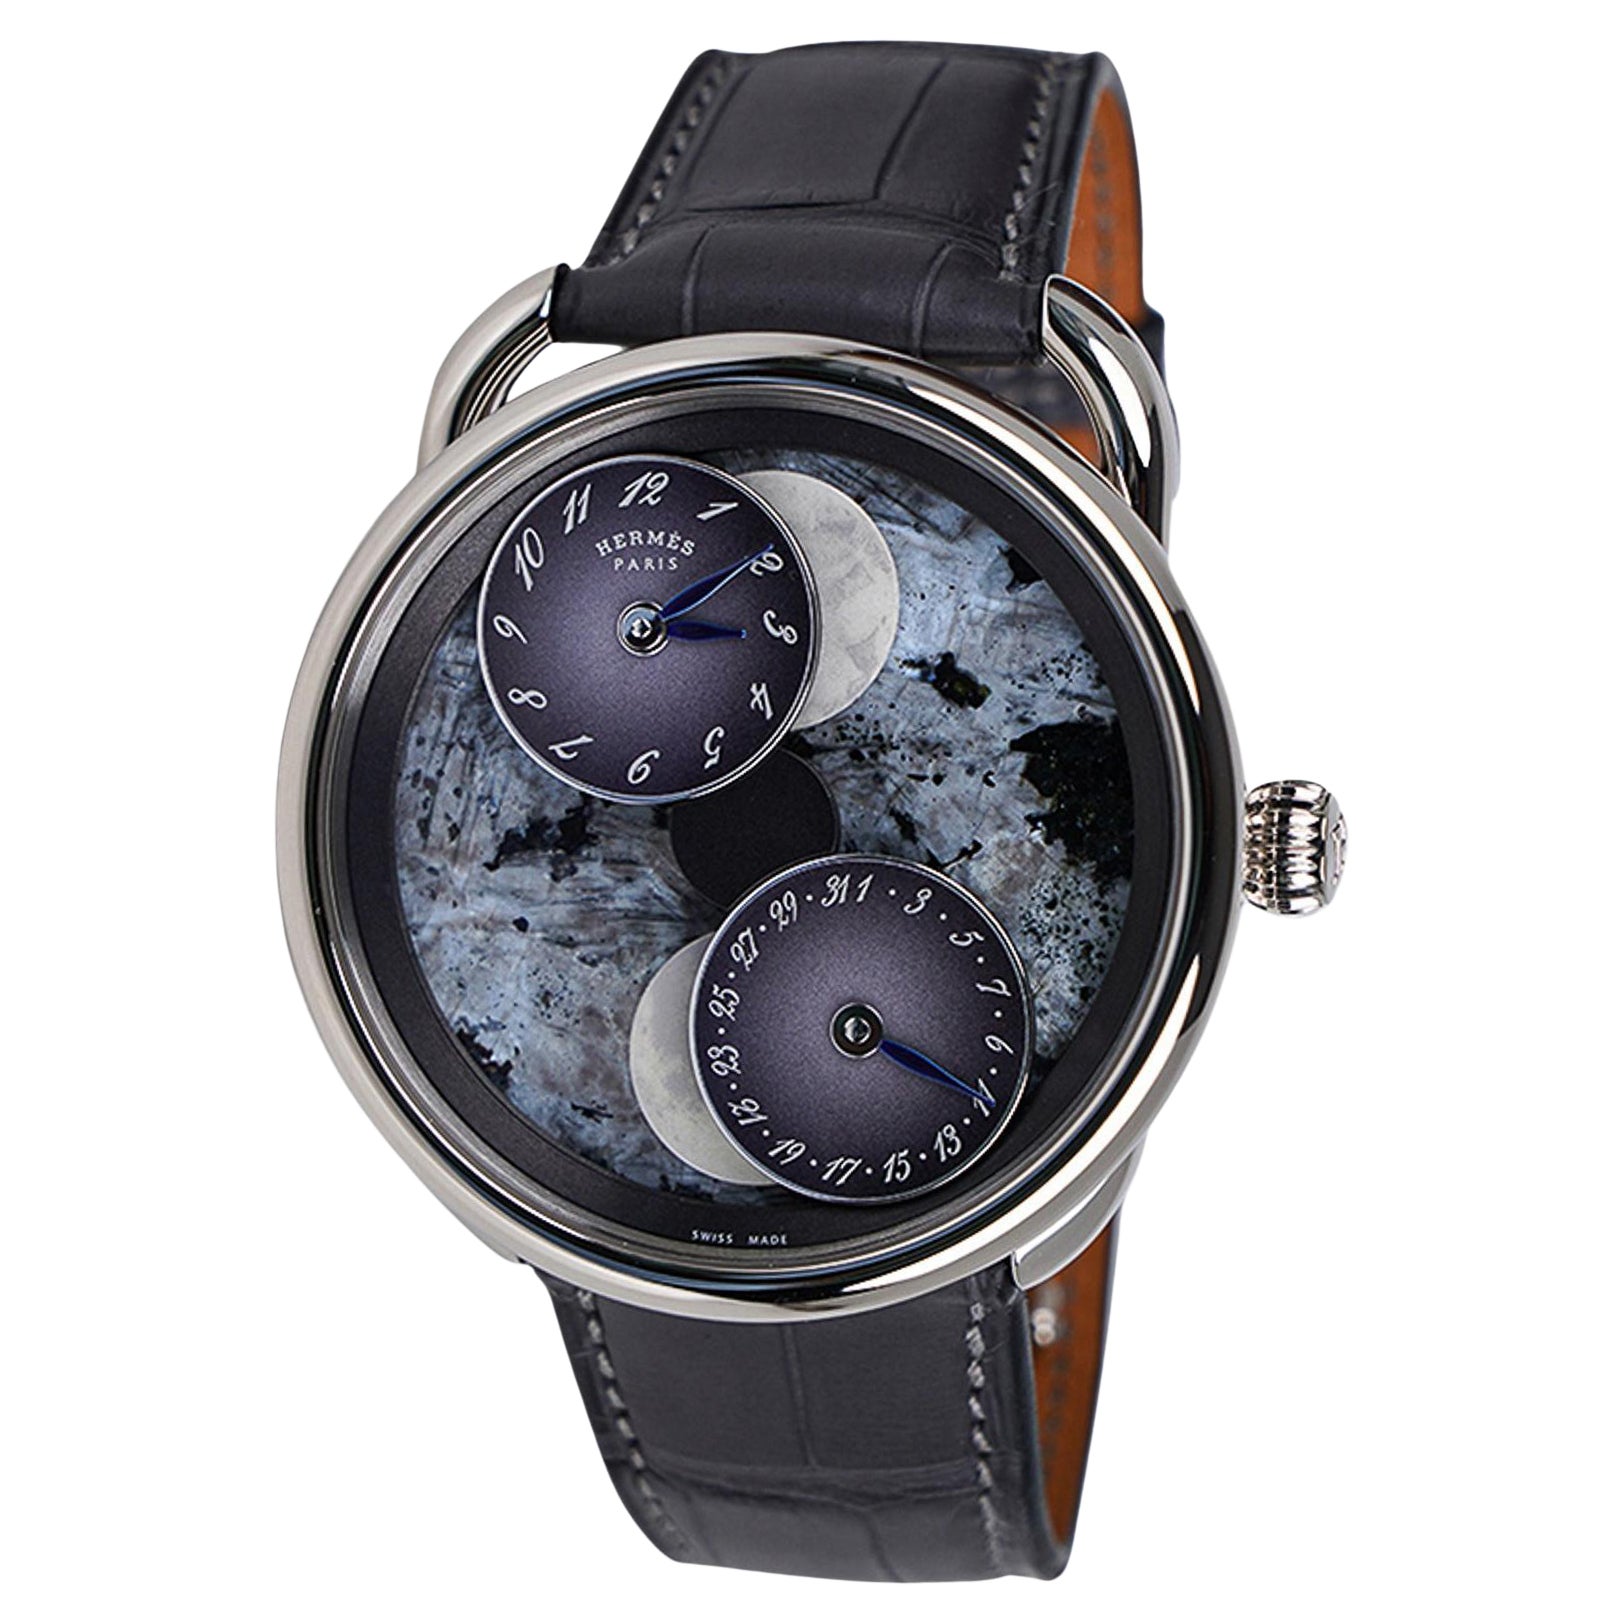 Hermes Arceau L’Heure De La Lune Only Watch Limited Edition For Sale